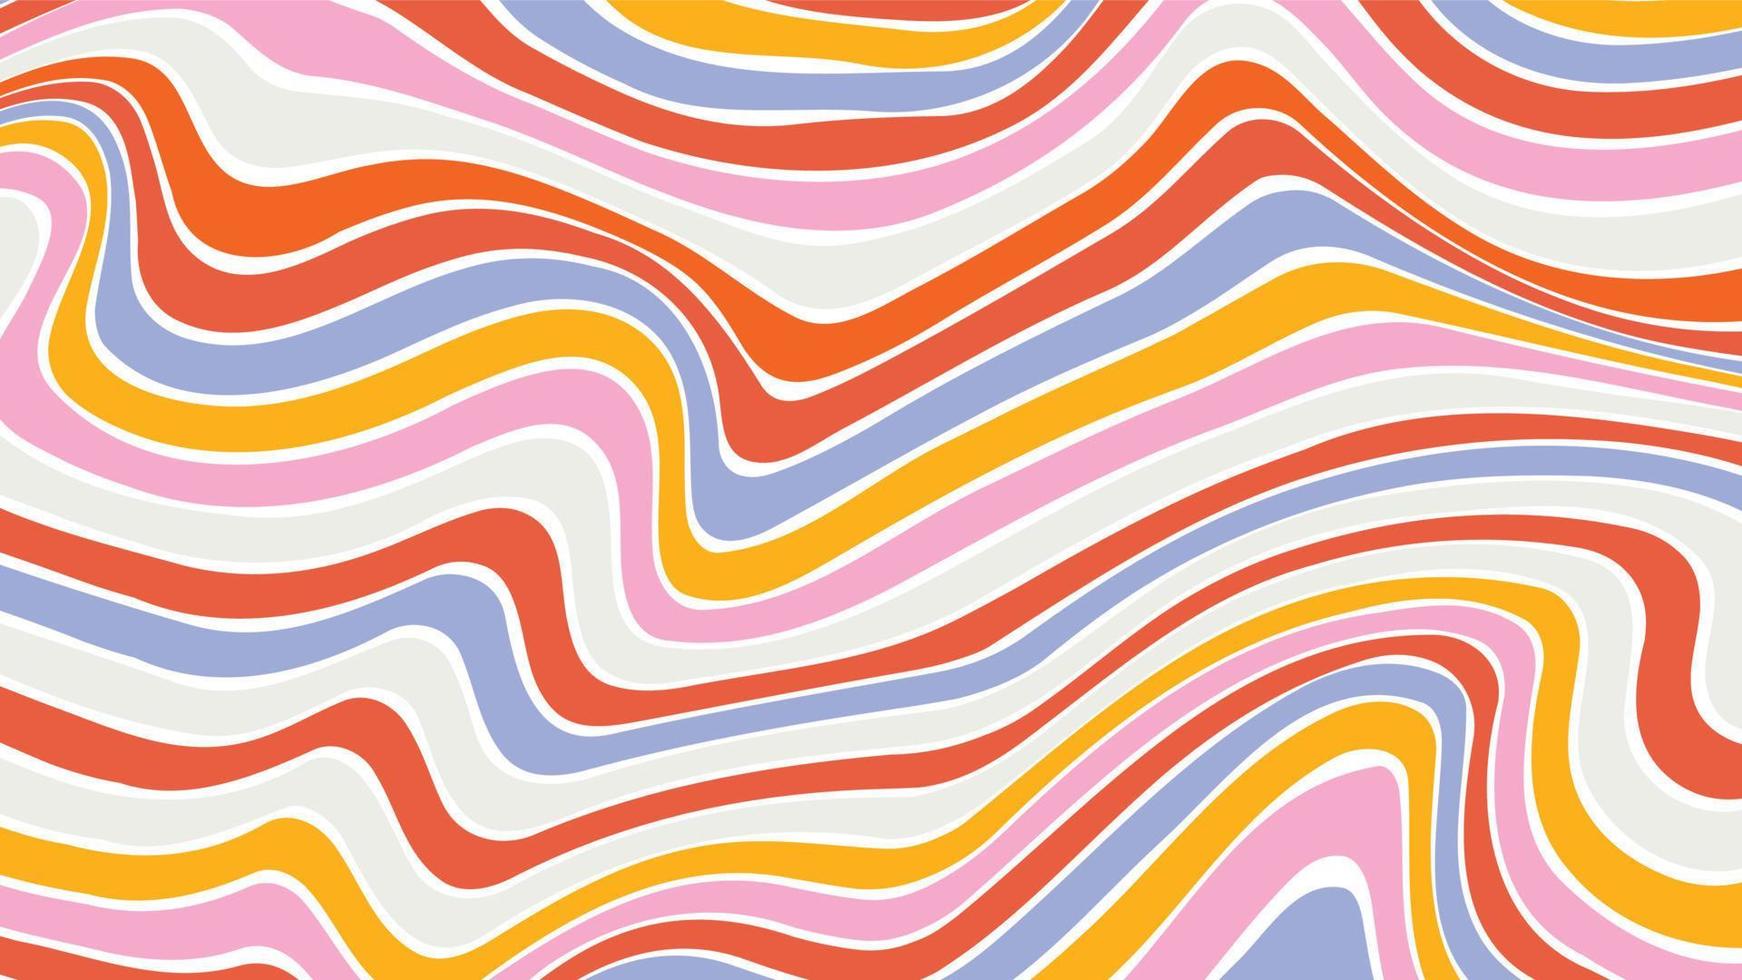 fundos de linha de arco-íris de onda ácida no estilo hippie dos anos 1970 e 1960. padrões de papel de parede y2k retrô vintage 70s 60s groove. coleção de fundo de pôster psicodélico. ilustração de desenho vetorial vetor